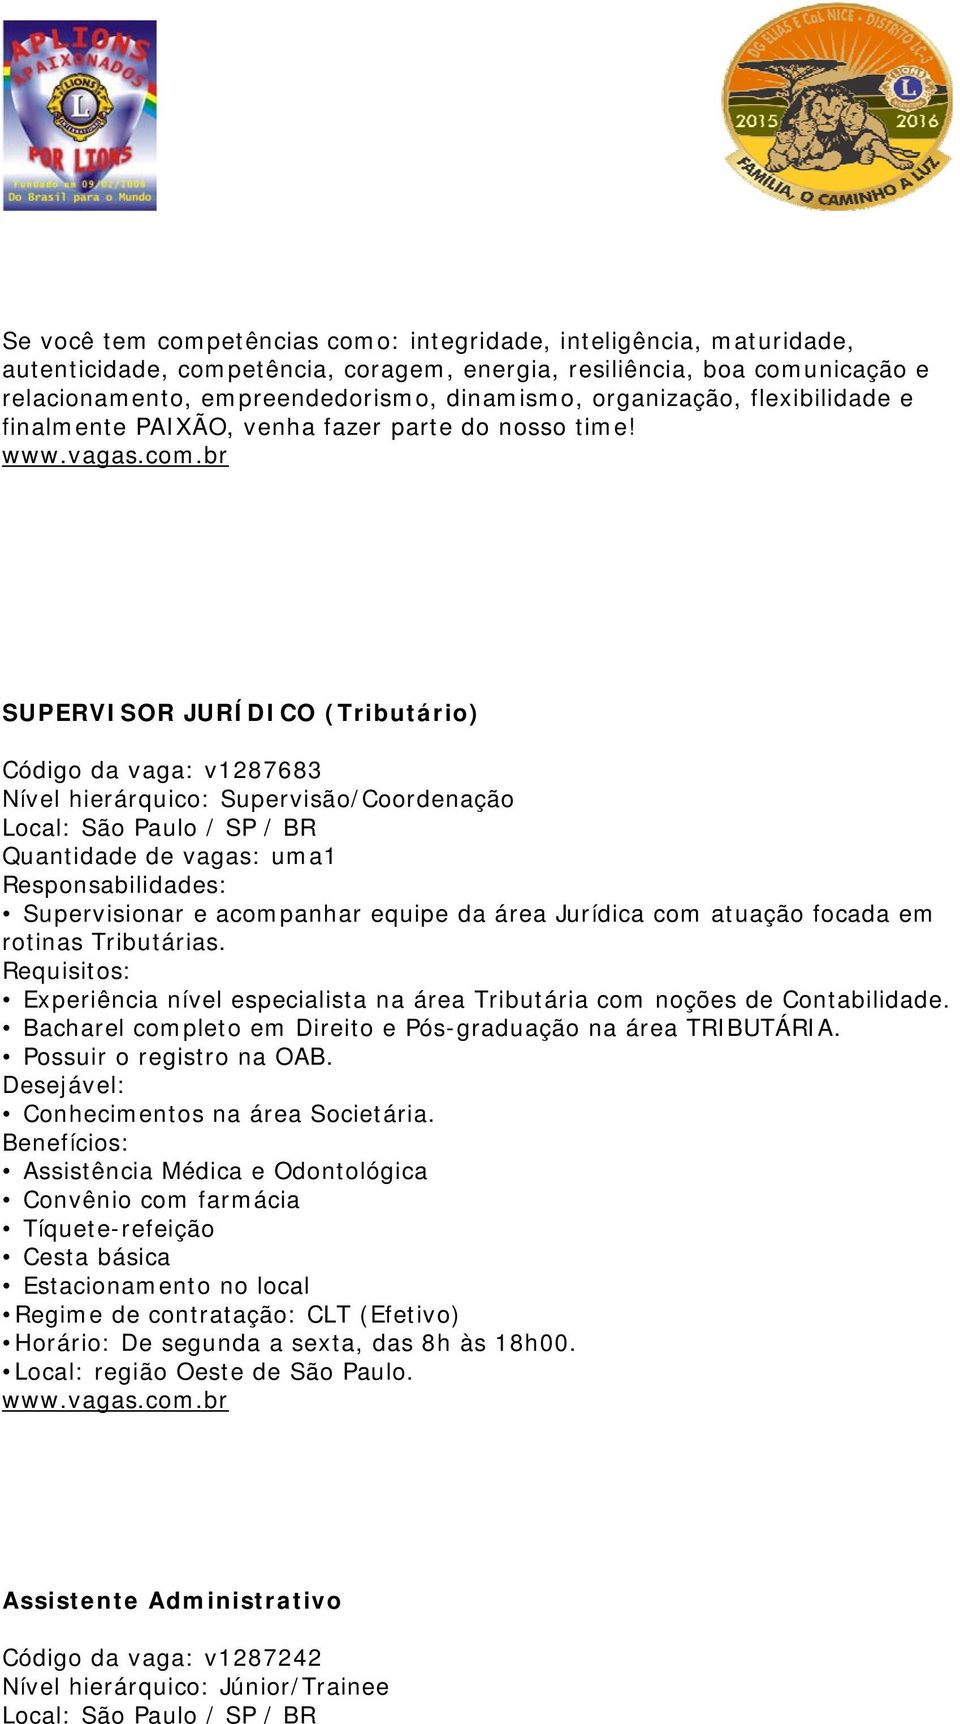 SUPERVISOR JURÍDICO (Tributário) Código da vaga: v1287683 Nível hierárquico: Supervisão/Coordenação Local: São Paulo / SP / BR Quantidade de vagas: uma1 Responsabilidades: Supervisionar e acompanhar